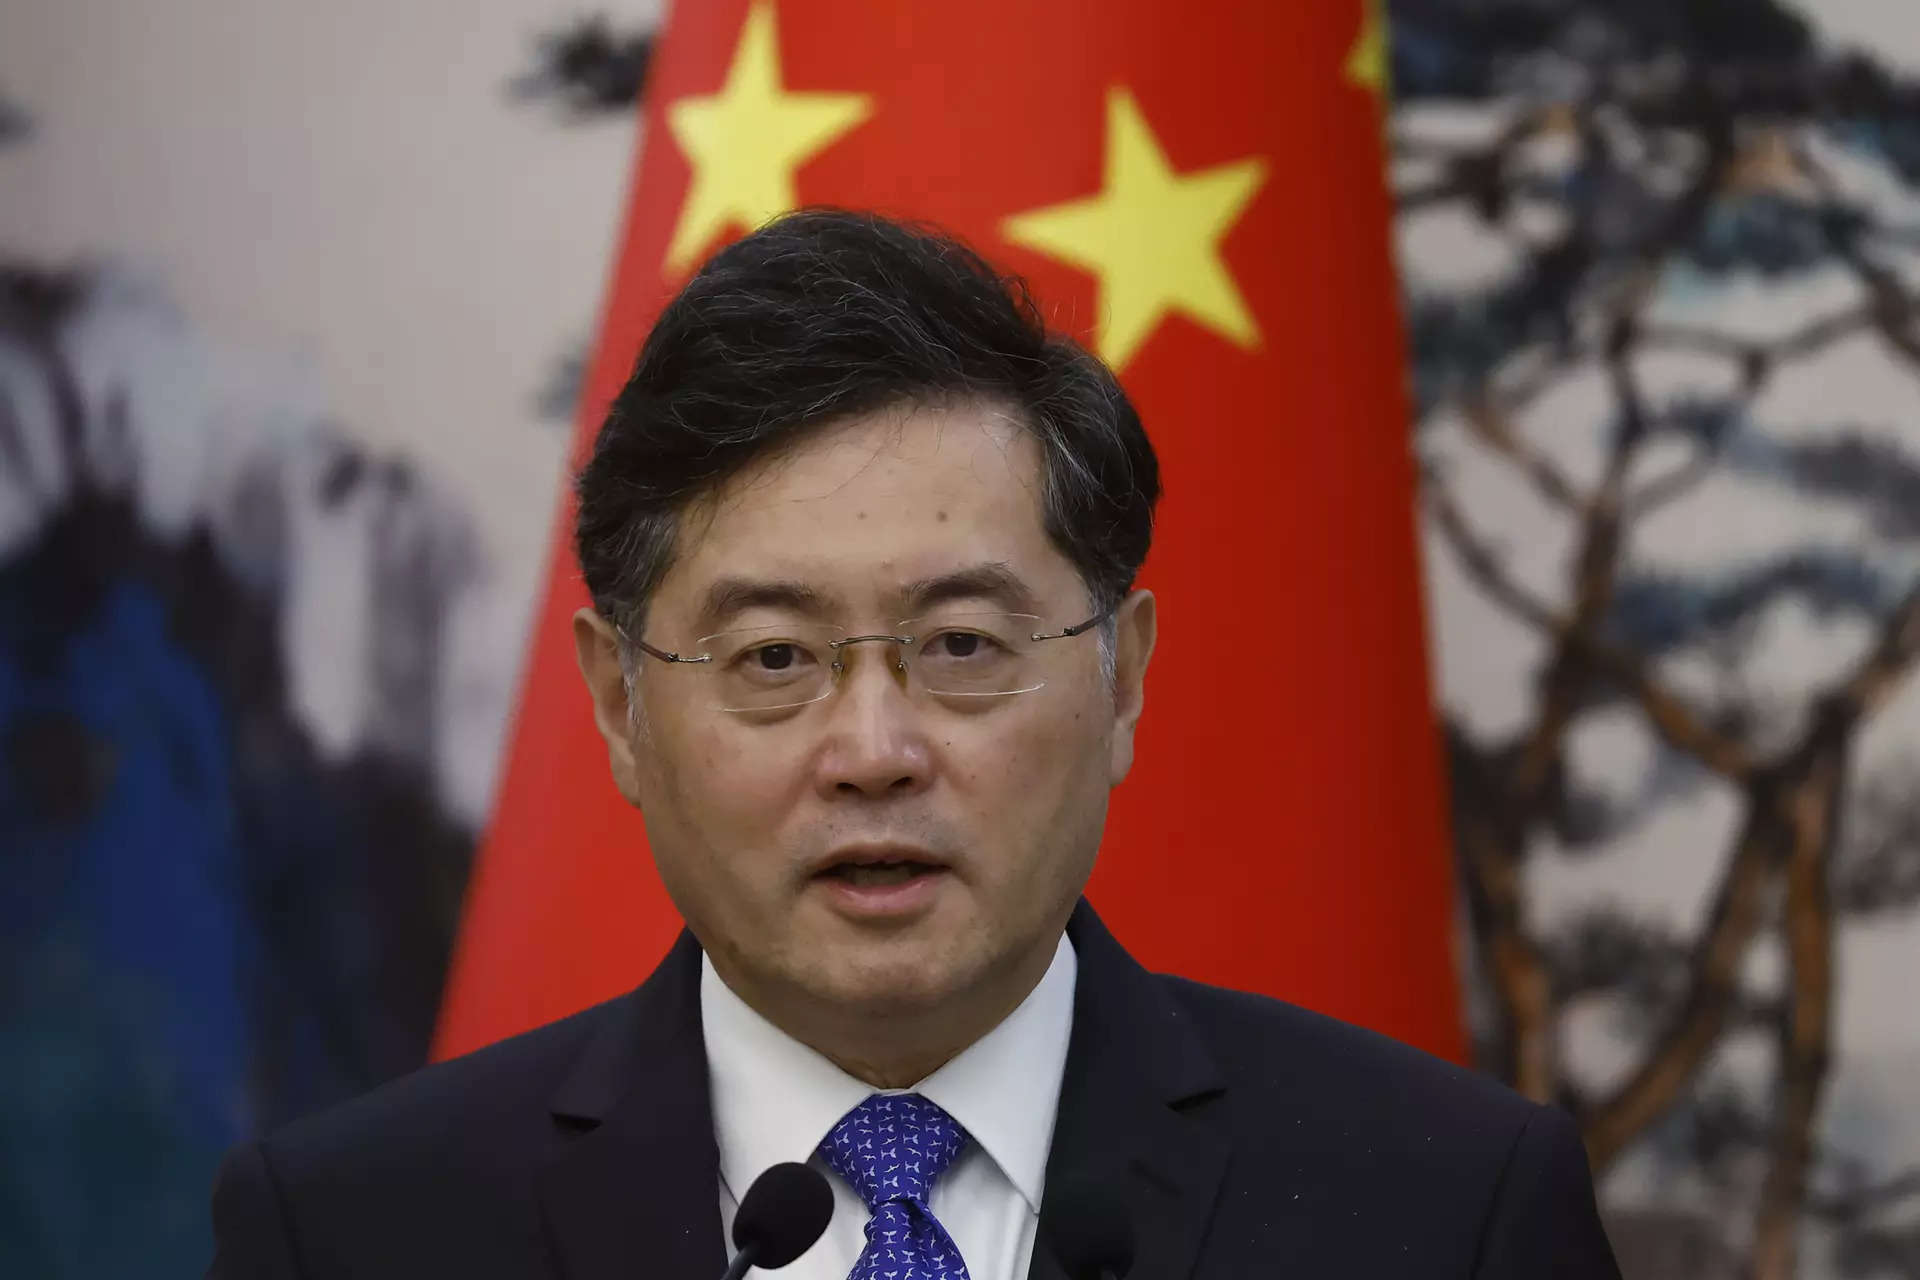 चीन ने 'लापता' विदेश मंत्री किन गैंग को बर्खास्त कर दिया, उनकी जगह उनके पूर्ववर्ती वांग यी को नियुक्त किया गया